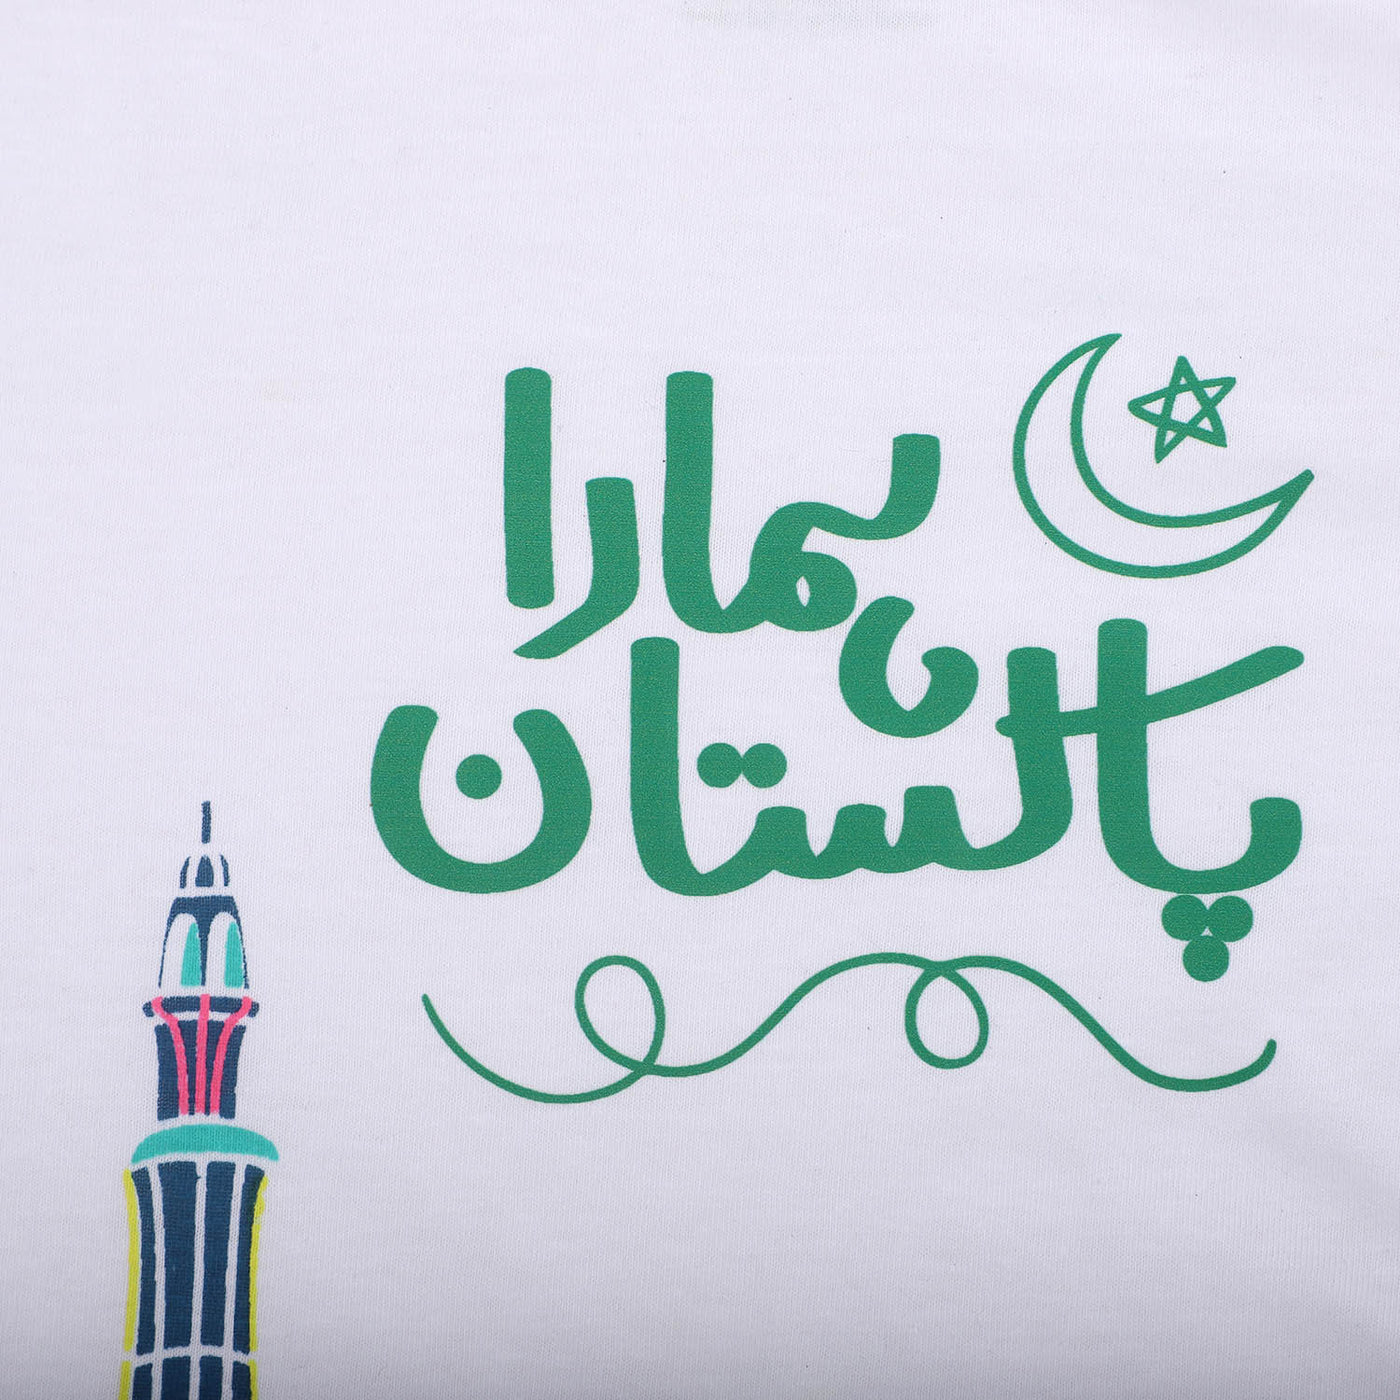 Girls T-Shirt Humara Pakistan - White